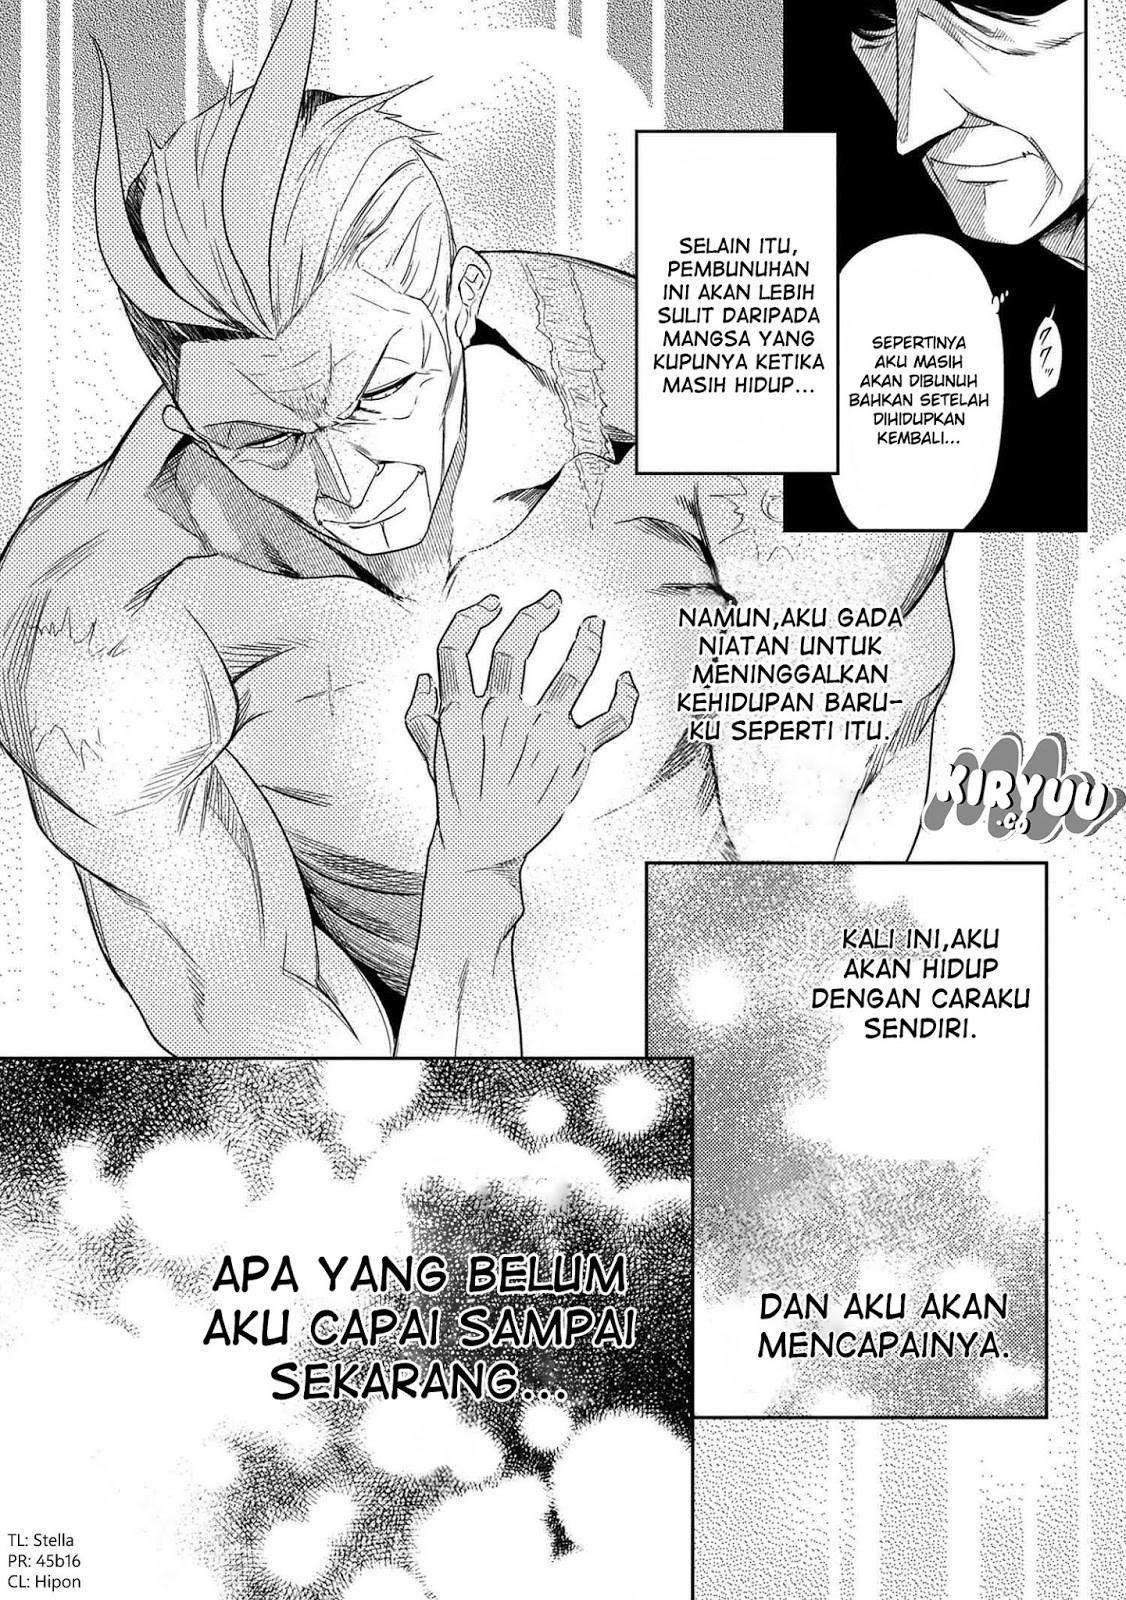 Sekai Saikyou no Assassin, Isekai Kizoku ni Tensei Suru Chapter 01.1 Bahasa Indonesia